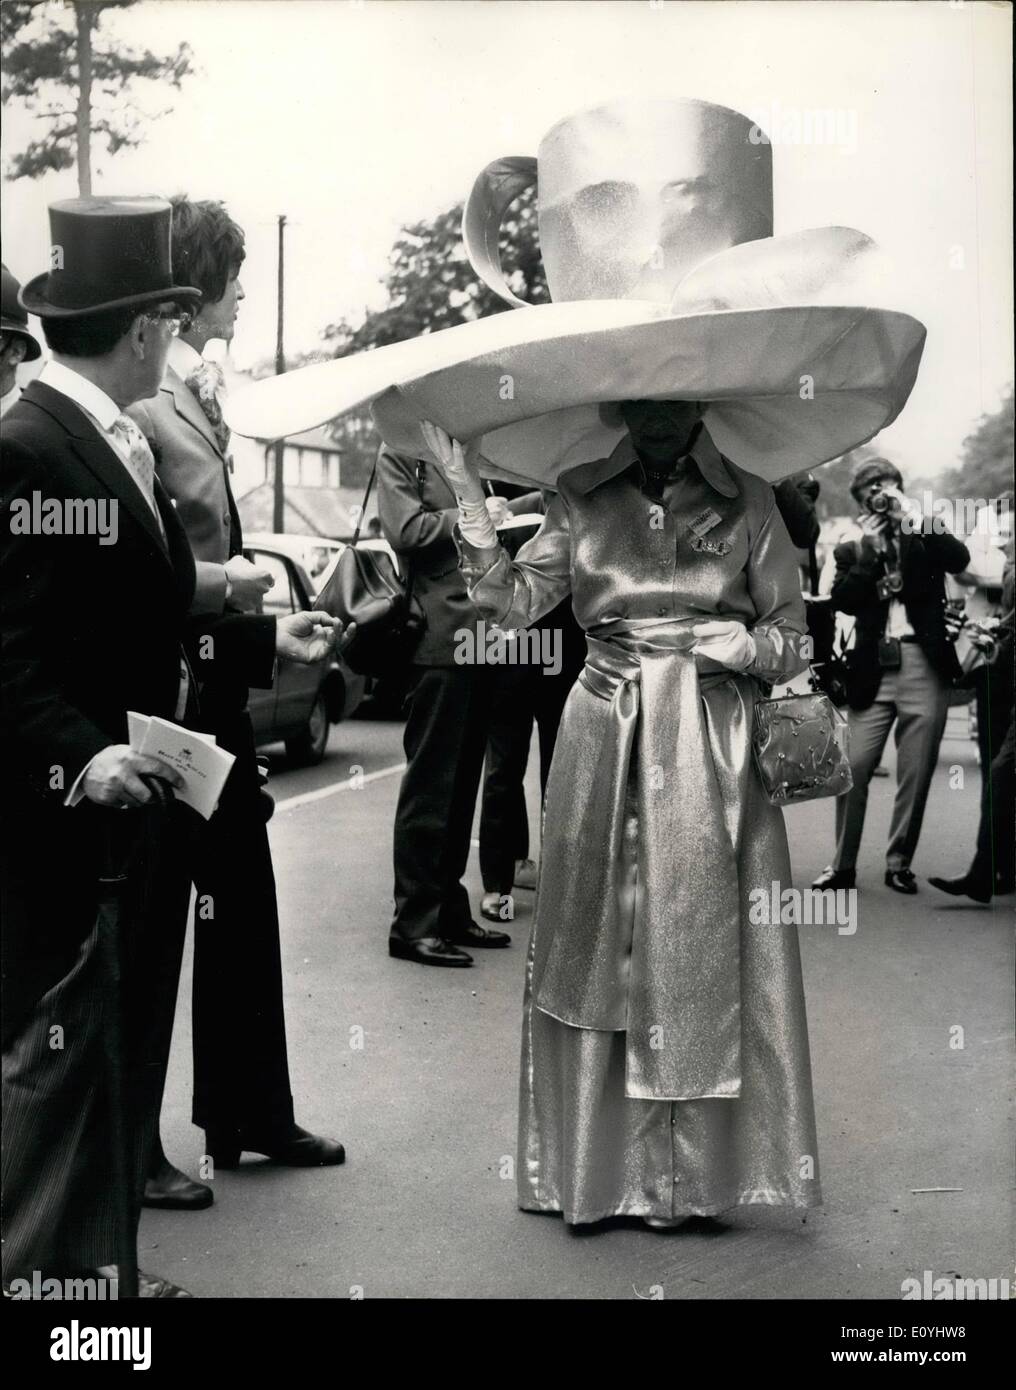 Juin 06, 1970 - La première journée de la réunion Royal Ascot Fashions du cours. Photo montre : Mme Gertrude Shilling qui est bien connu tous les jours pour porter un chapeau, sensationnel aujourd'hui arrivé à Ascot le port de cette tasse et soucoupe et cuillère création, dans l'or boiteux. Banque D'Images